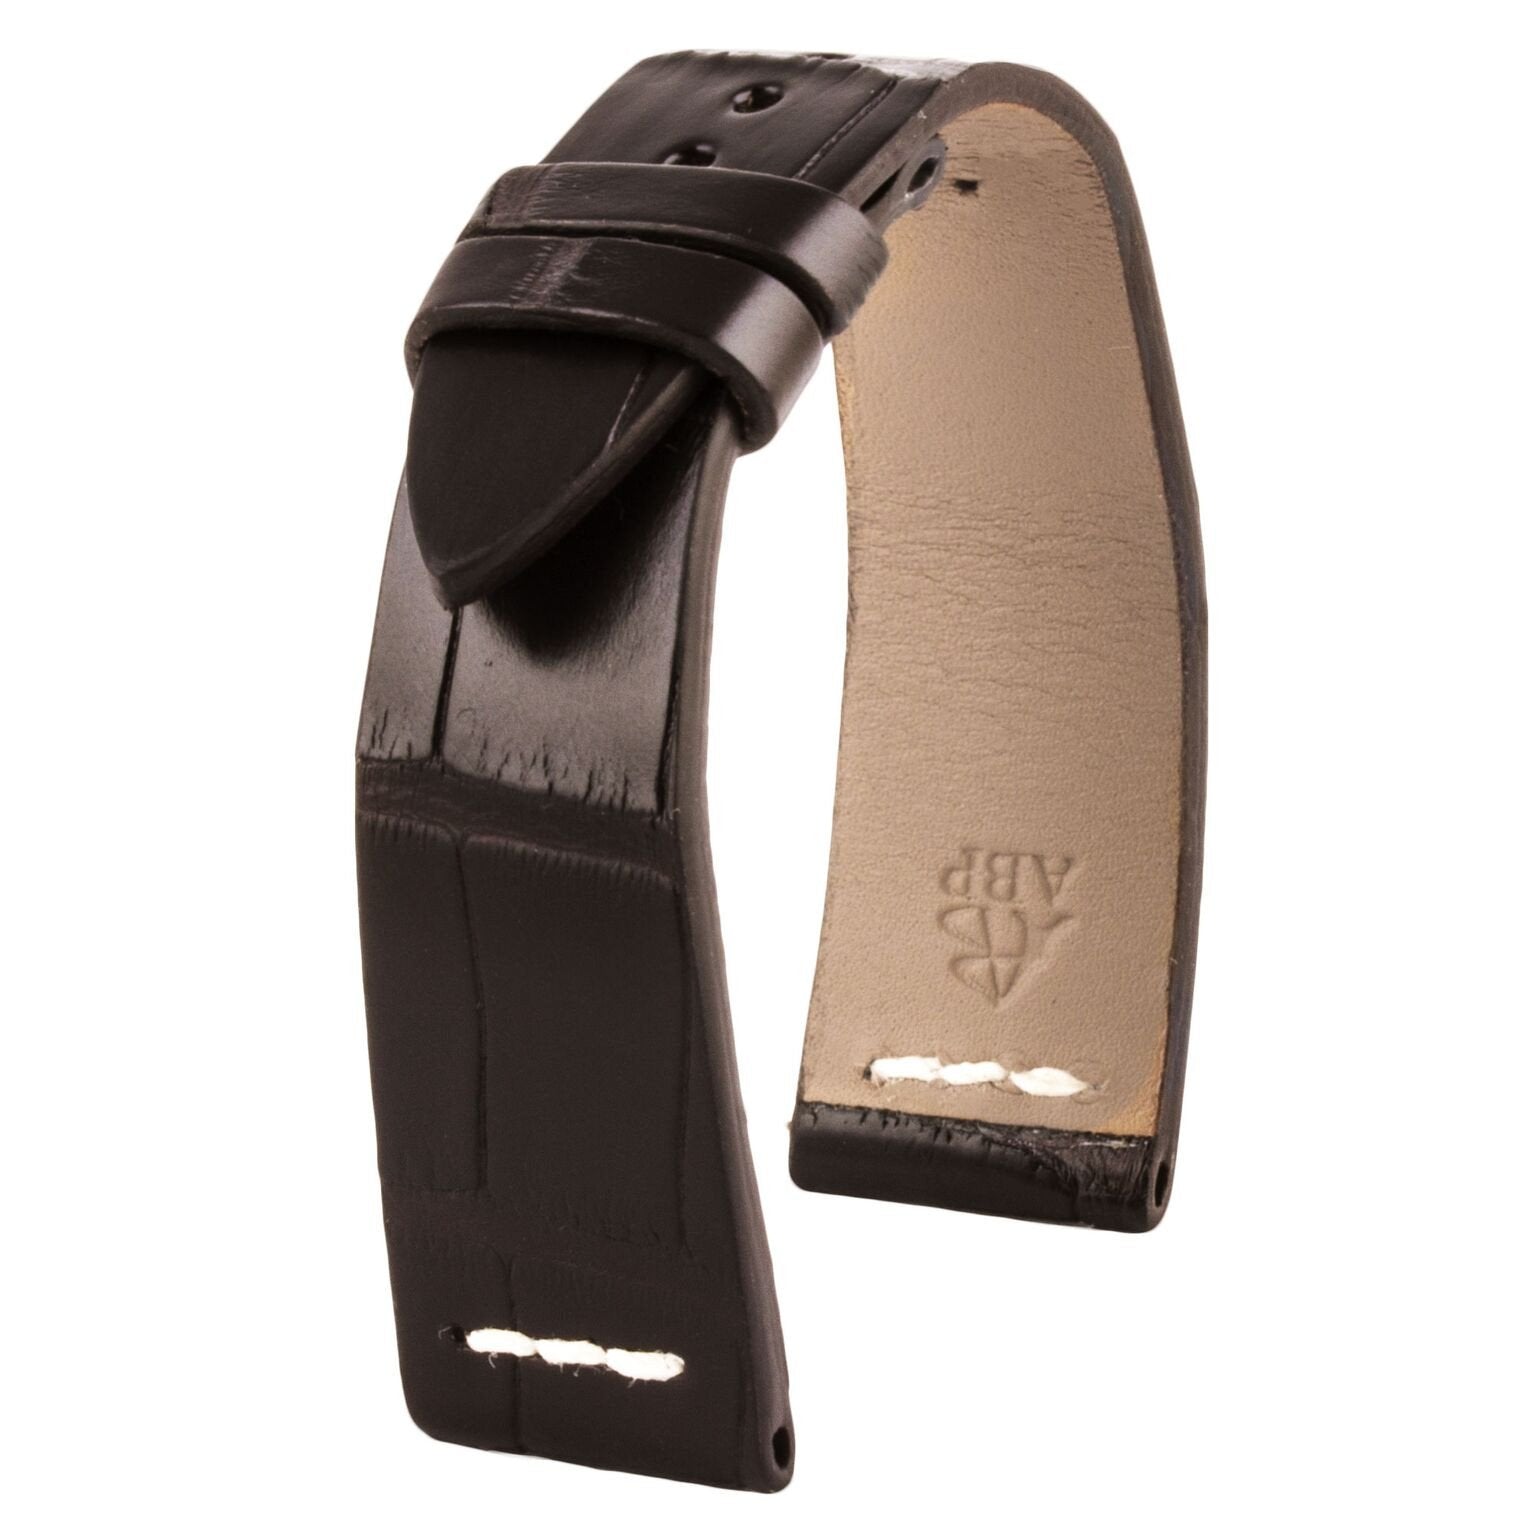 Rolex Sea Dweller - Bracelet de montre cuir - Alligator (noir, marron foncé) - watch band leather strap - ABP Concept -